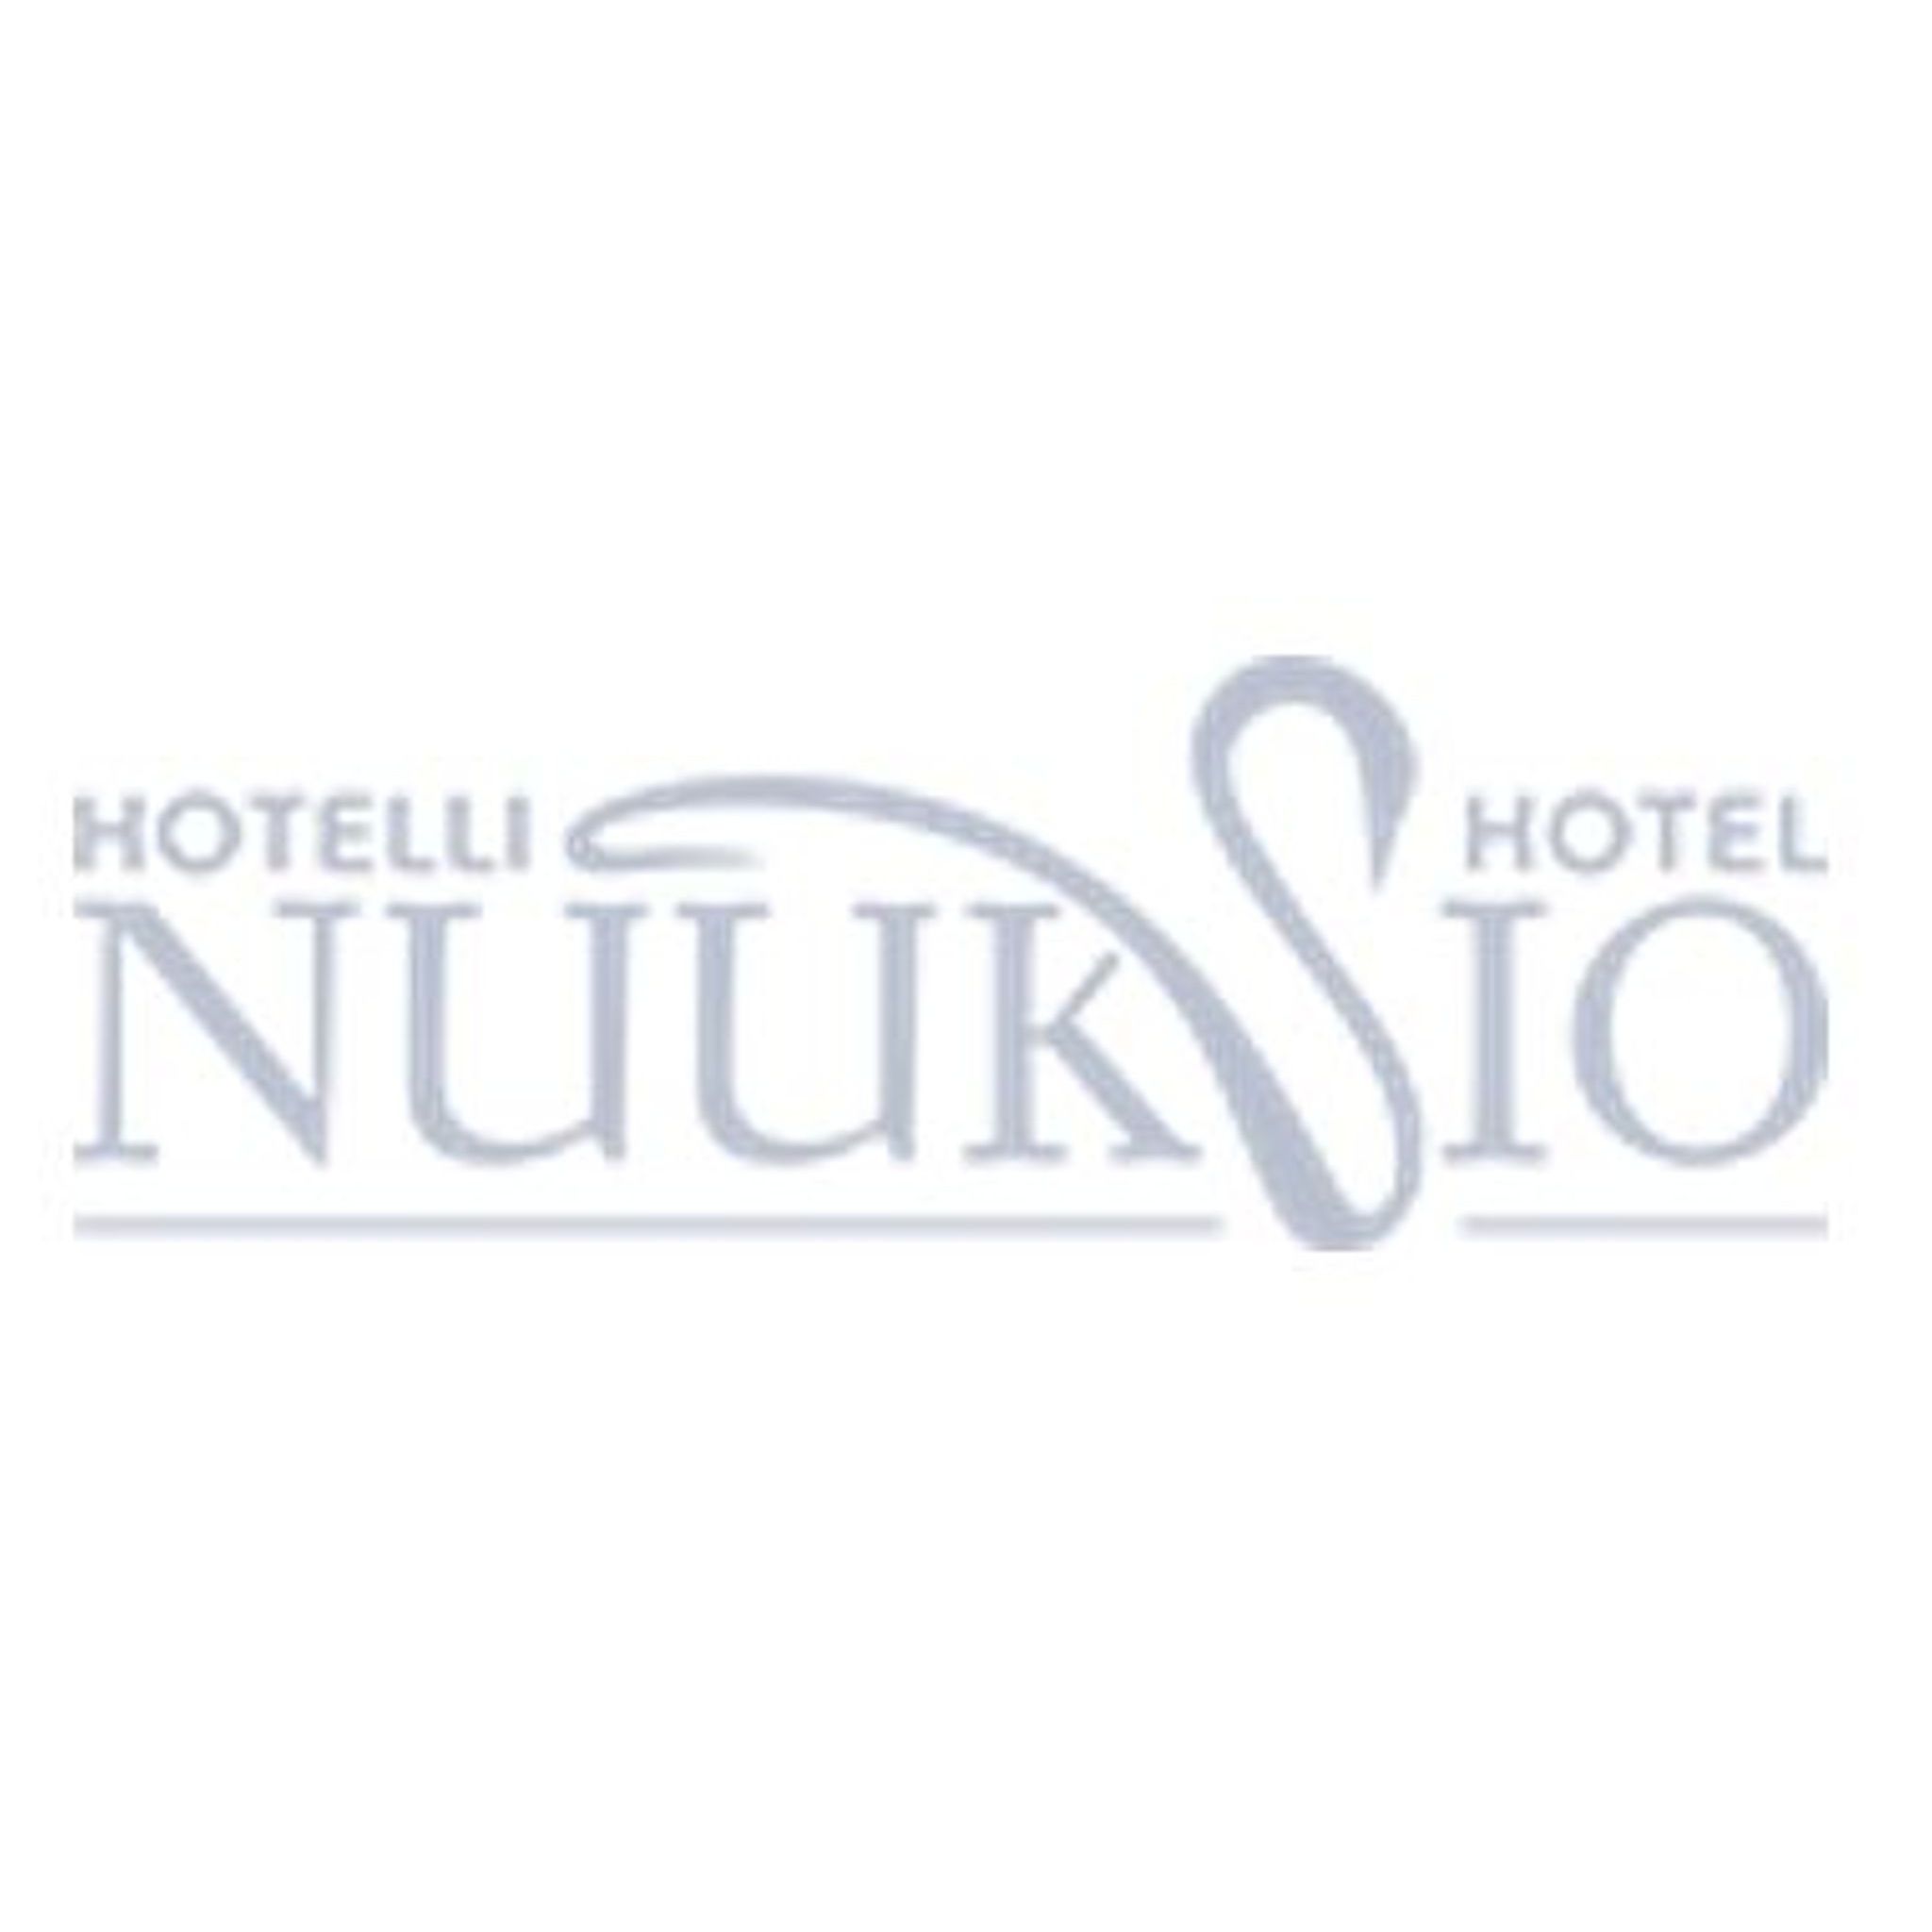 Hotelli Nuuksio Logo